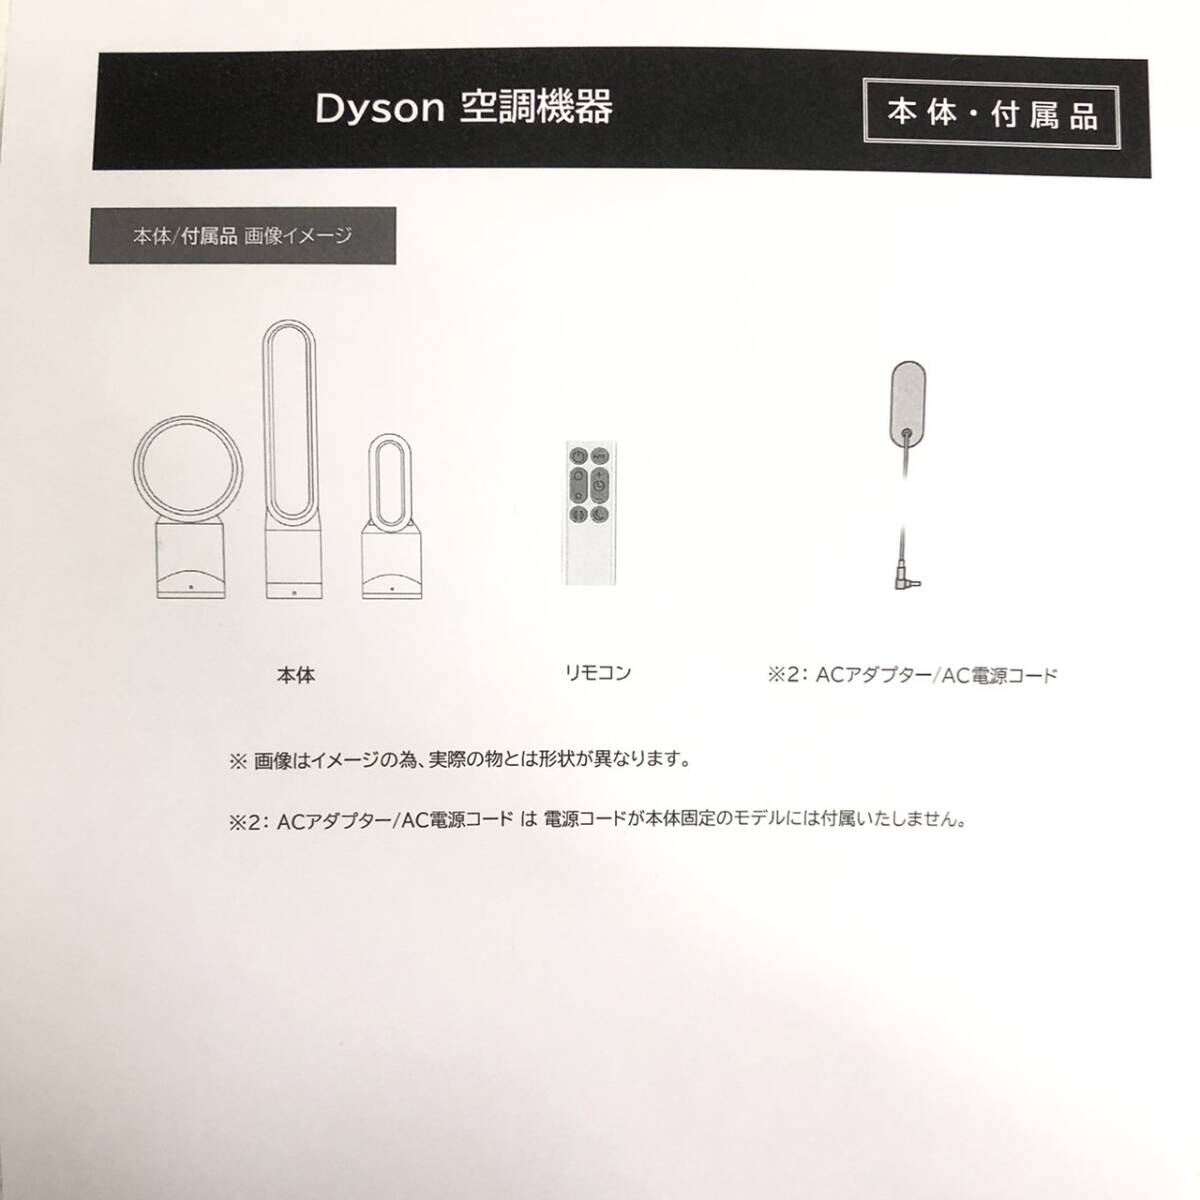 [1 иен старт бесплатная доставка ]dyson hot+cool тепловентилятор AM 09 WN N( белый / никель ) воспроизведение товар произведена чистка рабочее состояние подтверждено 19